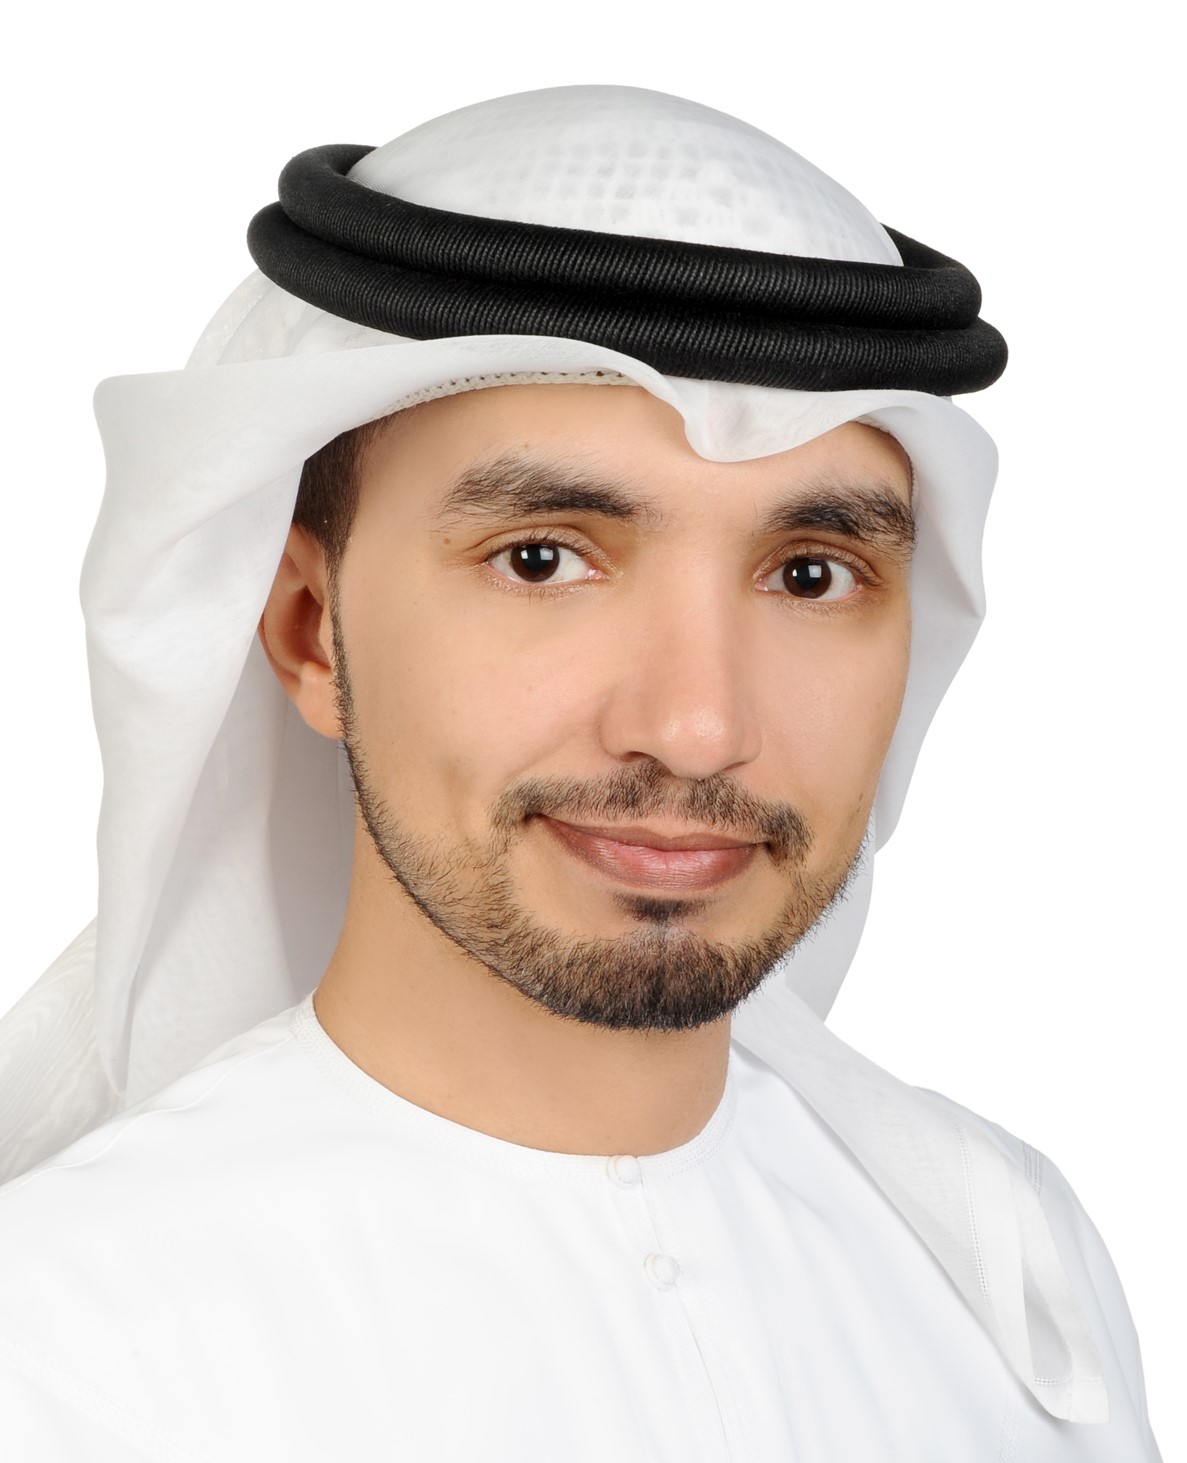 Dr. Ahmed Al-Durra